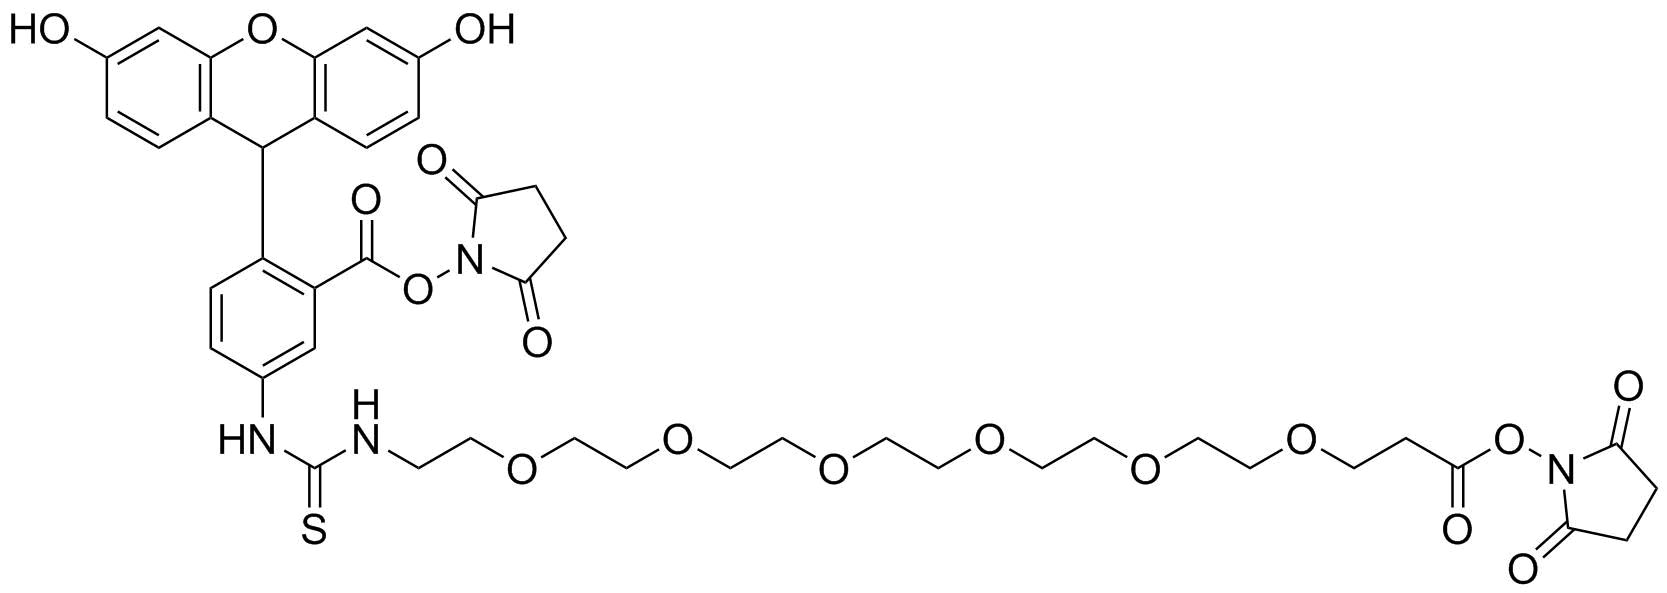 Fluorescein-PEG6-bis-NHS ester